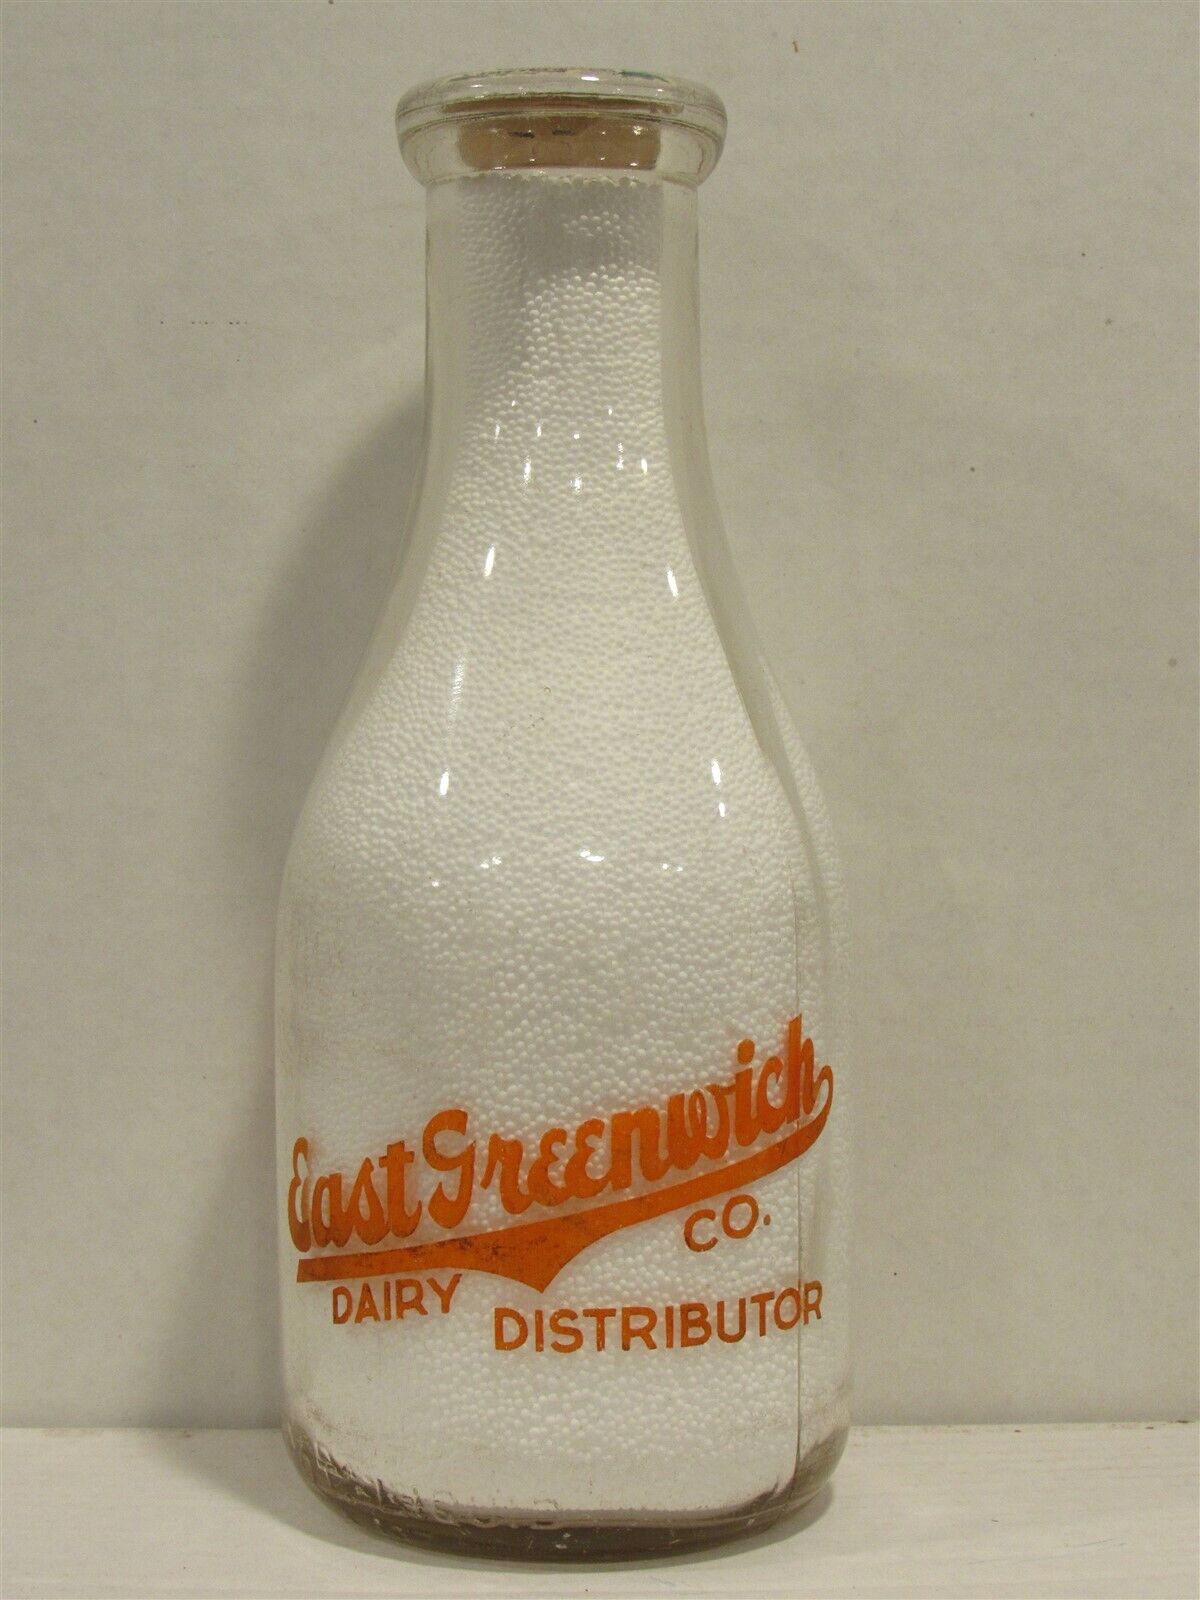 TRPQ Milk Bottle East Greenwich Dairy Co East Greenwich RI KENT COUNTY 1949